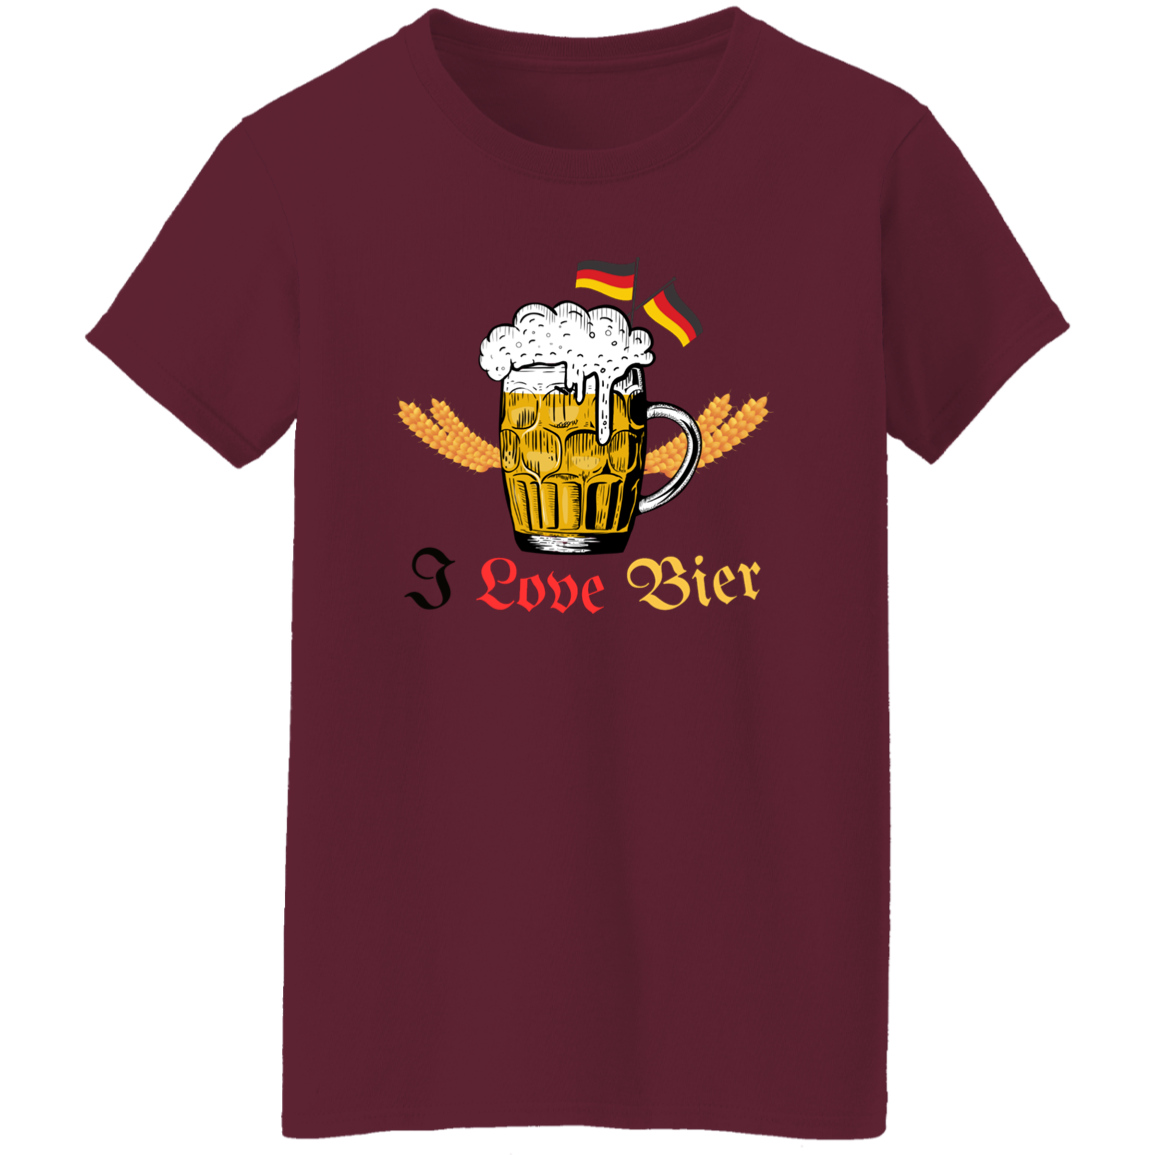 I Love Bier (Beer) - Women's, Ladies' T-Shirt